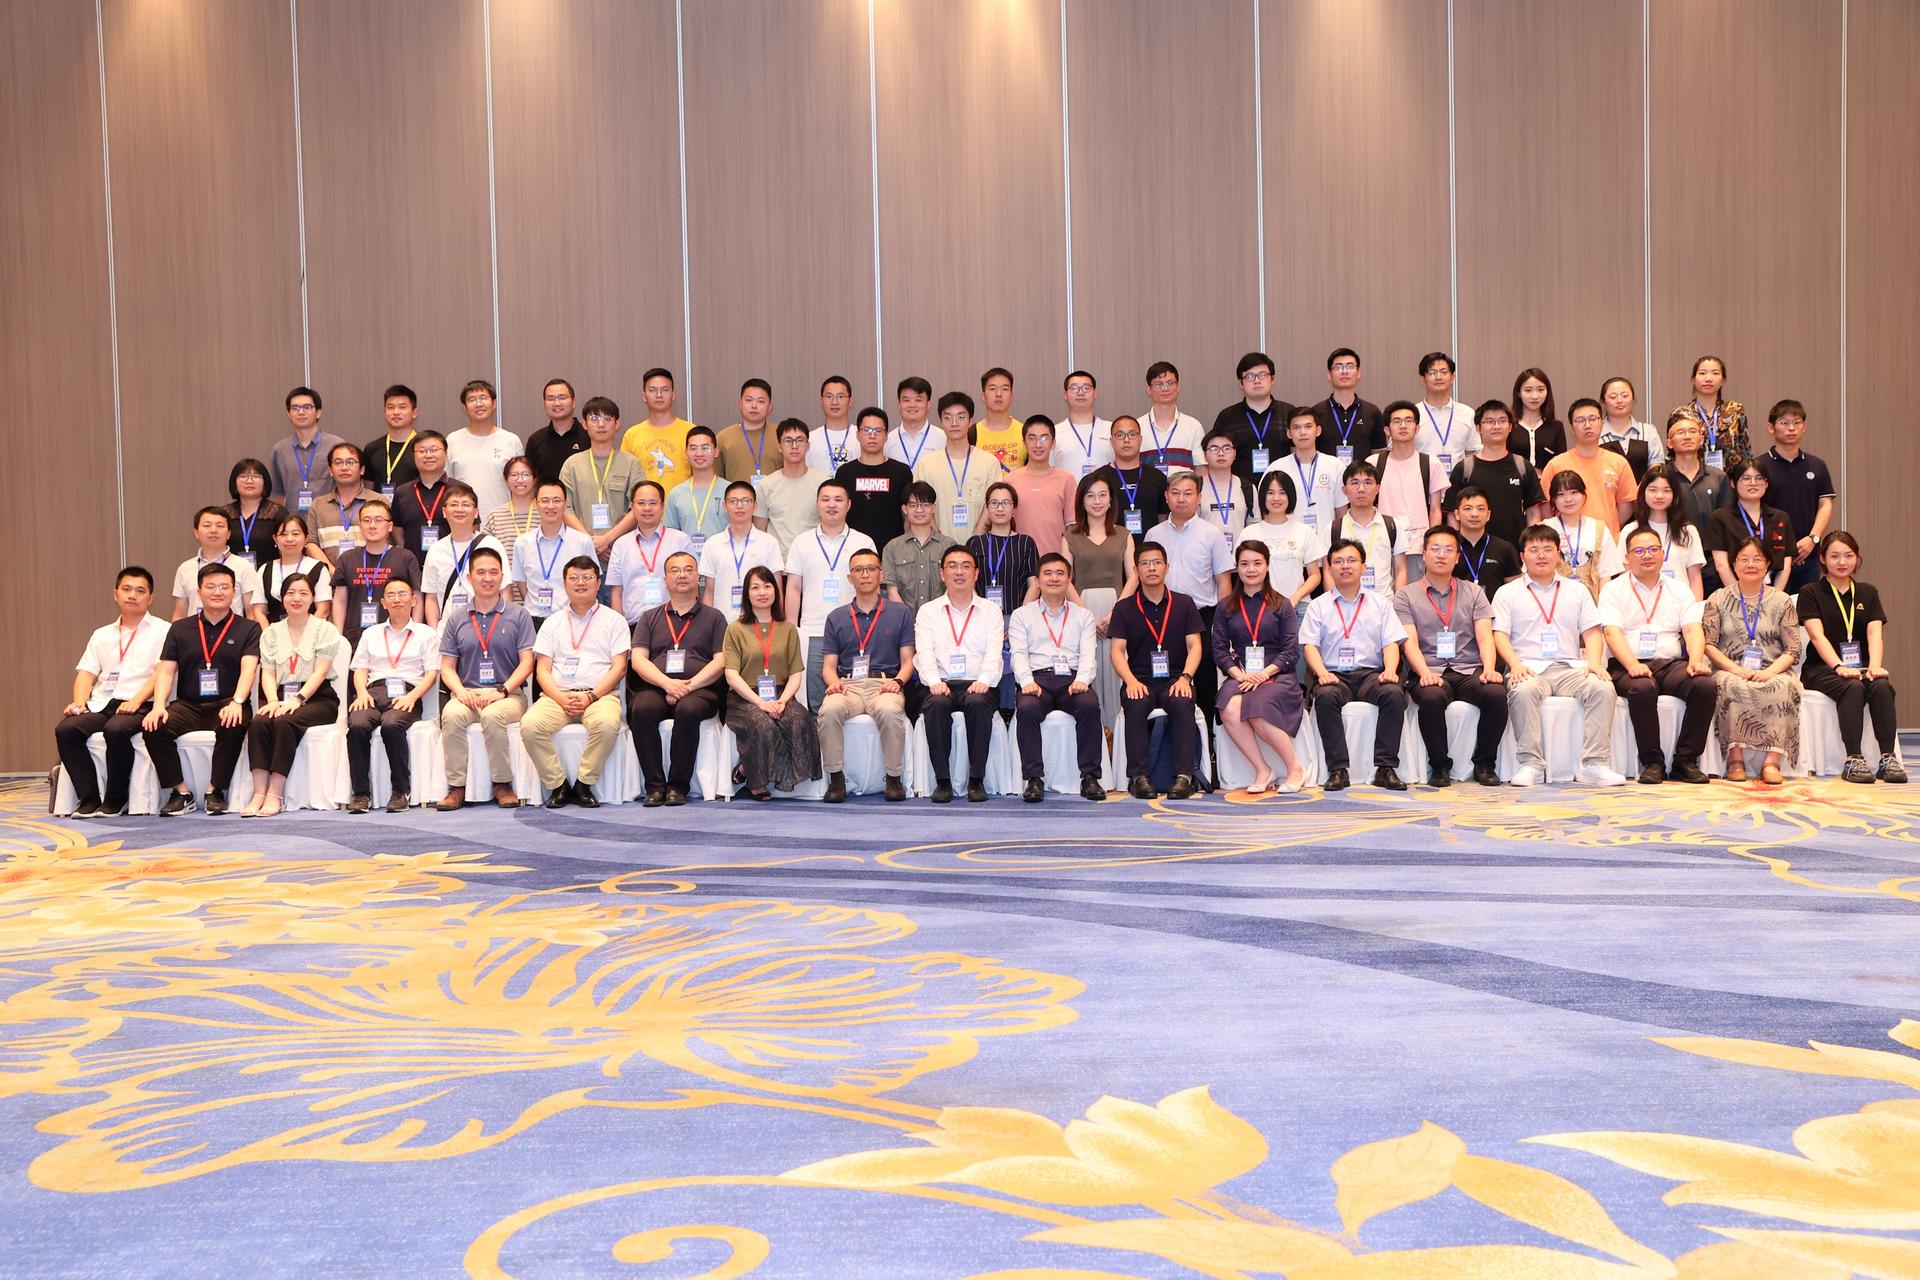 彩八彩票受邀出席武汉市工业软件技术研讨会，共话工业软件创新发展